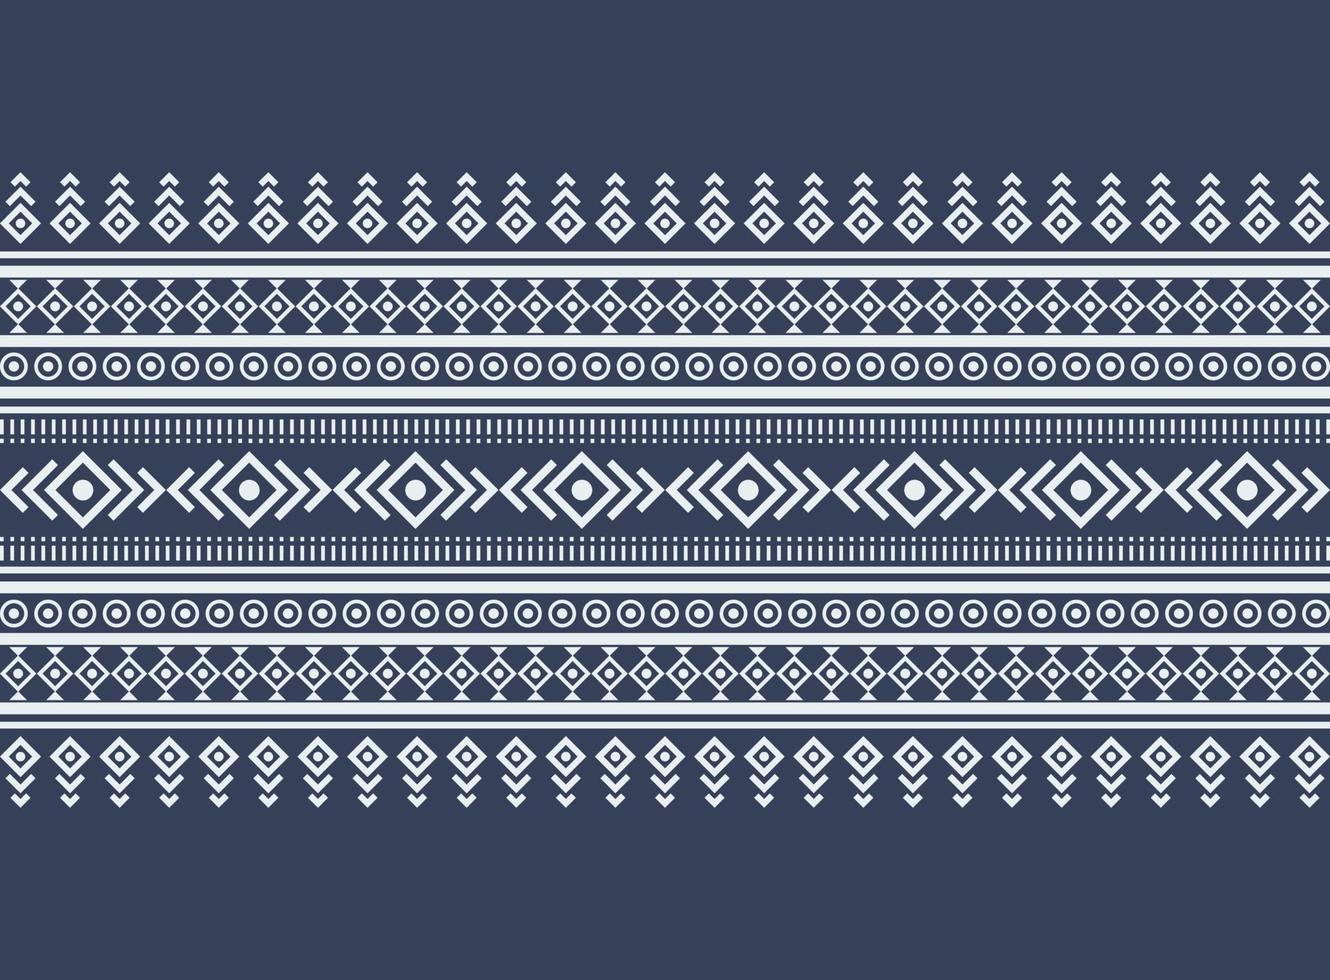 fondo de patrón oriental étnico geométrico. diseño de patrones en estilo boho. diseño para textura, envoltura, ropa, batik, tela, papel tapiz y fondo. diseño de bordado de patrón. vector